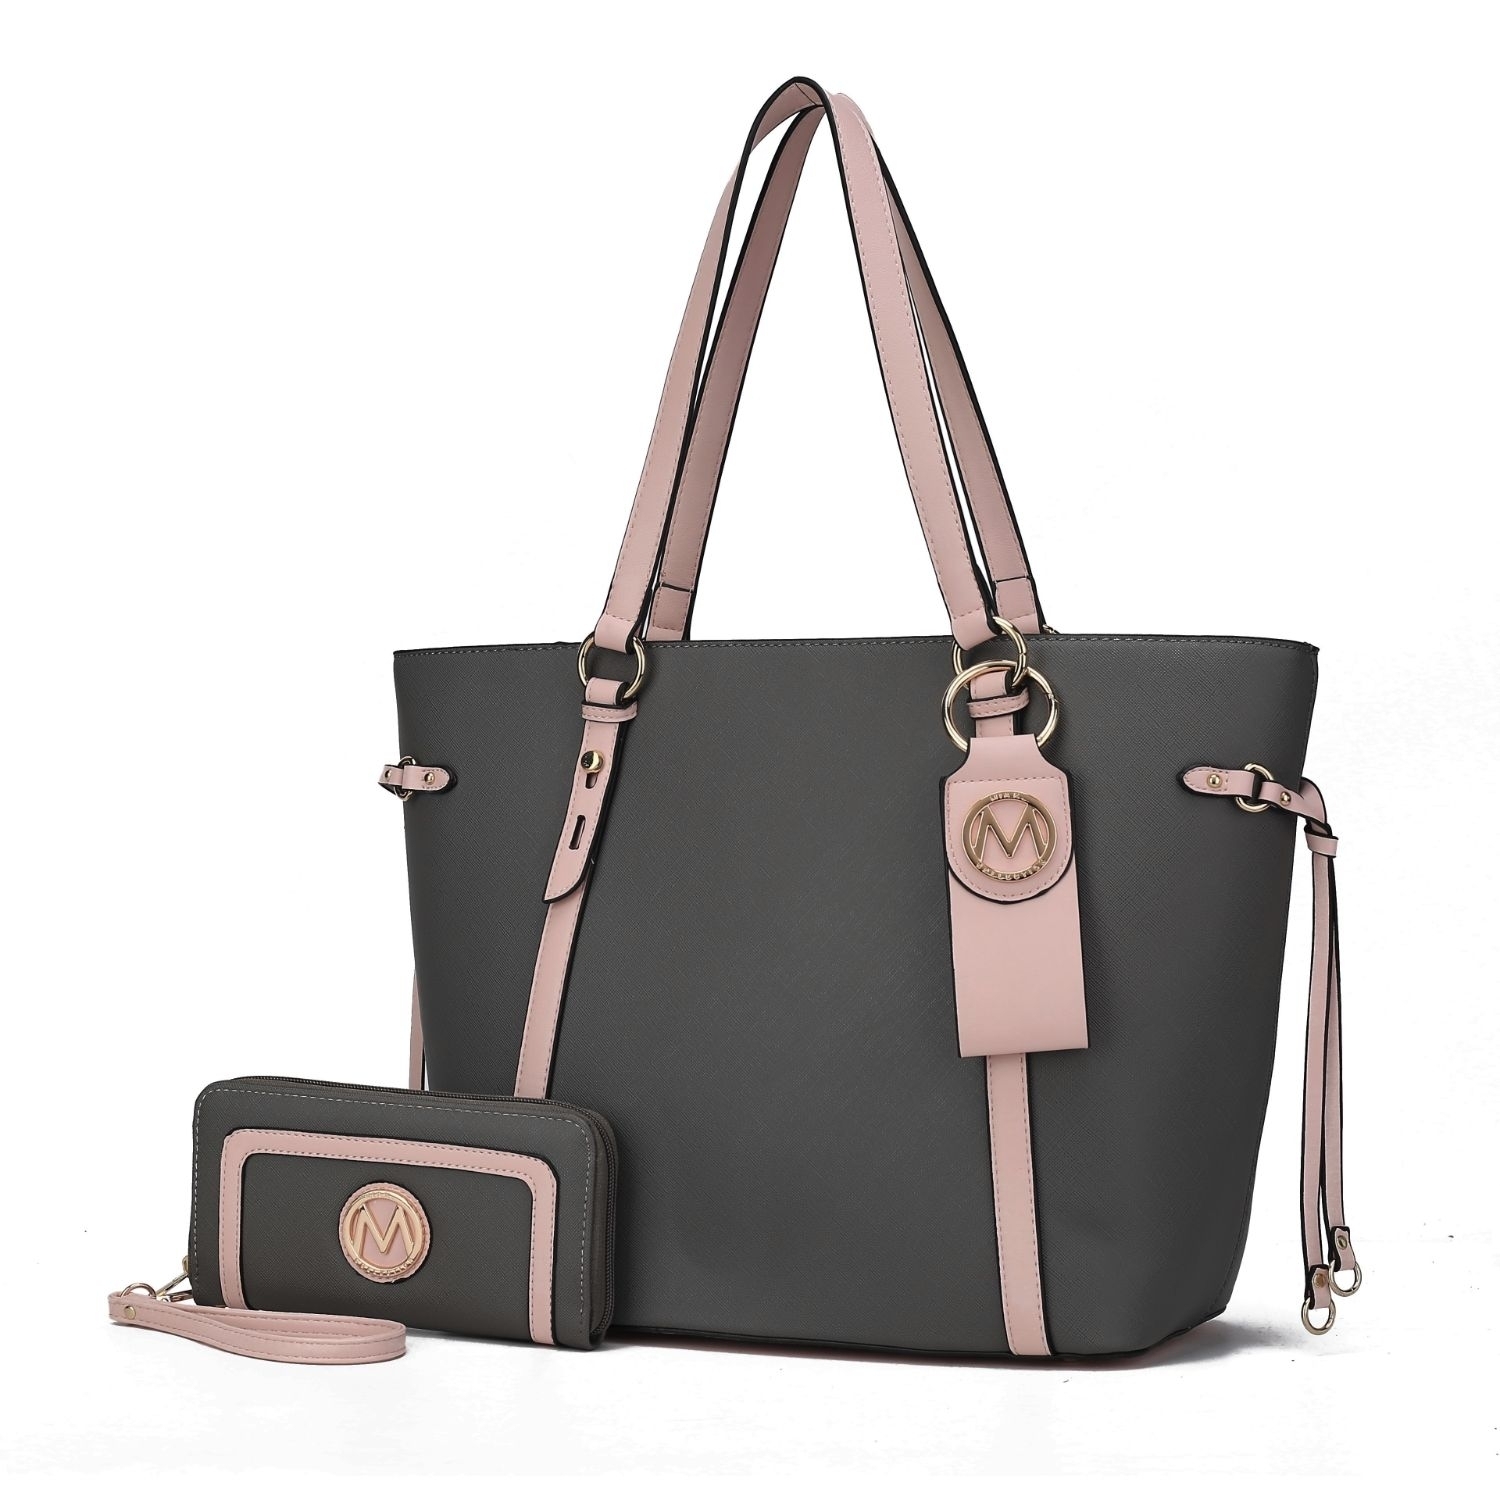 MKF Collection Koeia 3 Pcs Set Tote Handbag, Wallet And Keyring By Mia K. - Charcoal Blush